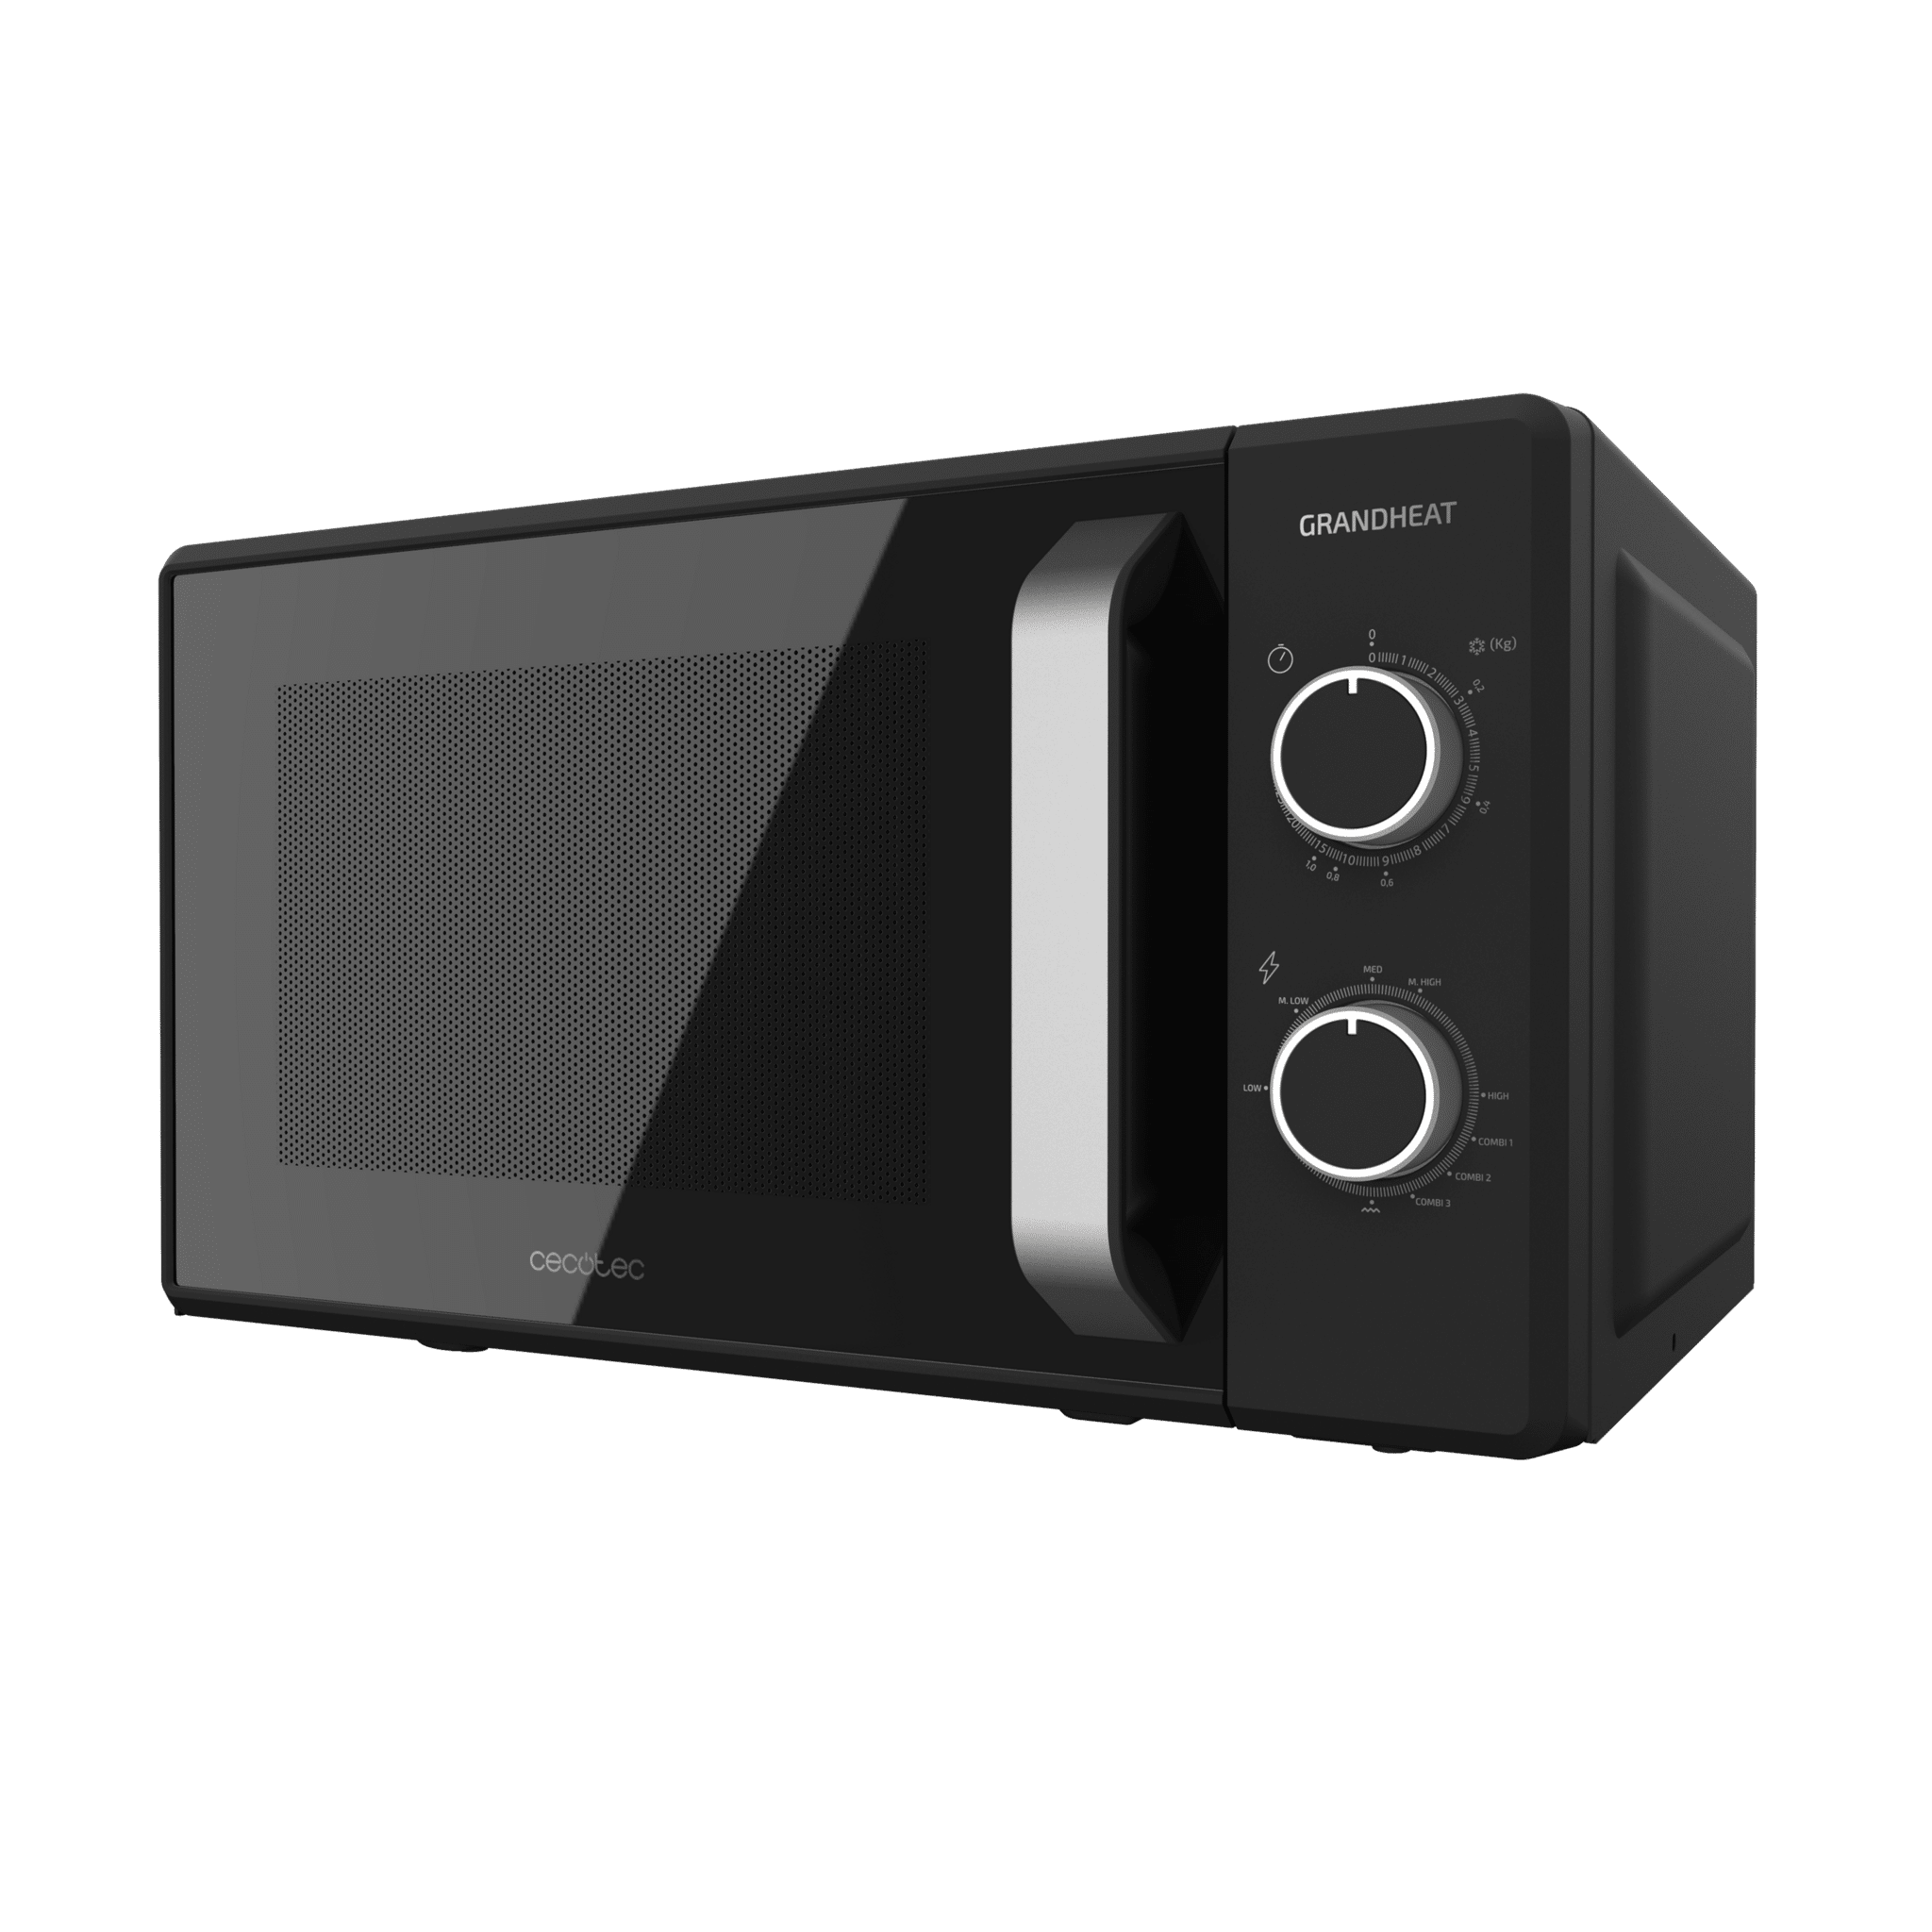 minuteur Noir Cecotec Micro-ondes avec grill de 20 litres Grandheat 3130 700 W et 800 W Grill mode décongélation 6 niveaux revêtement anti-Dirt iTech et technologie 3DWave 